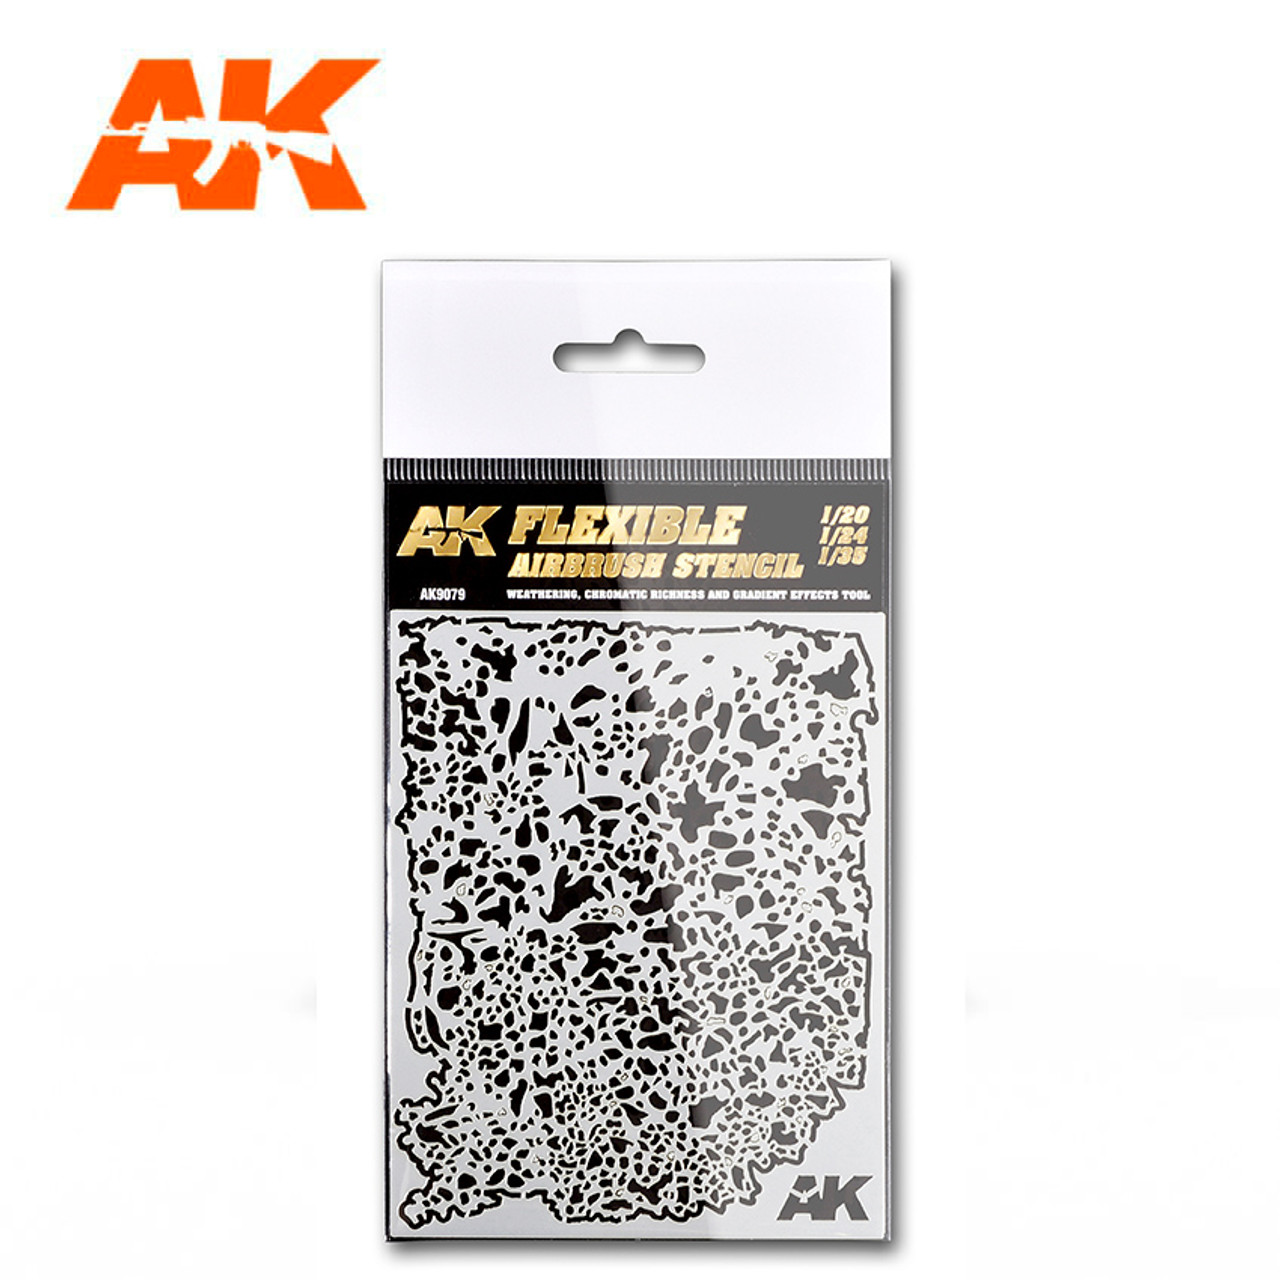 Flexible Airbrush Stencil (1/20, 1/24, 1/35) - AK9079